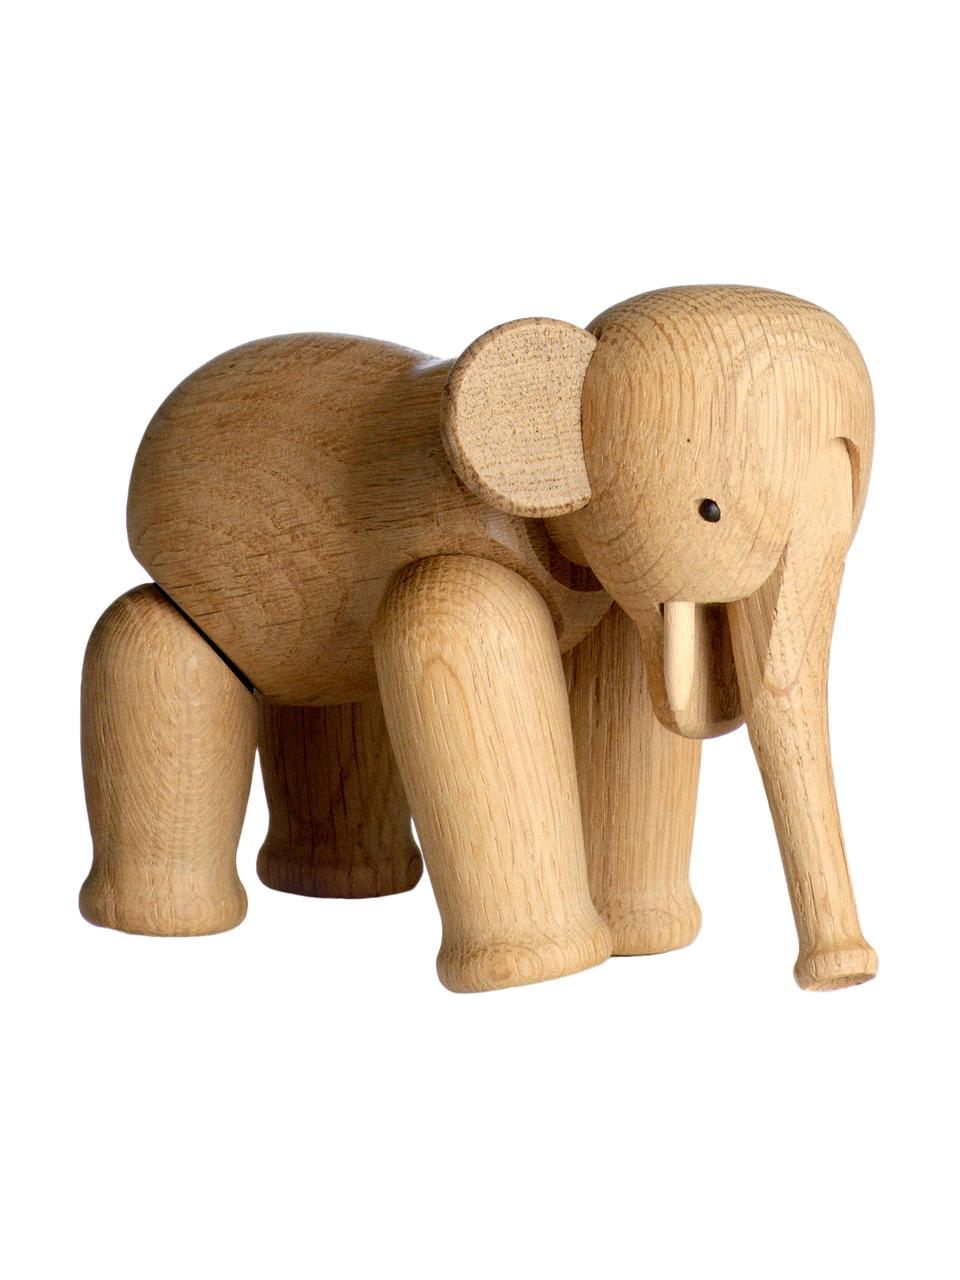 Designová dekorace z dubového dřeva Elephant, Lakované dubové dřevo, Dubové dřevo, Š 17 cm, V 13 cm